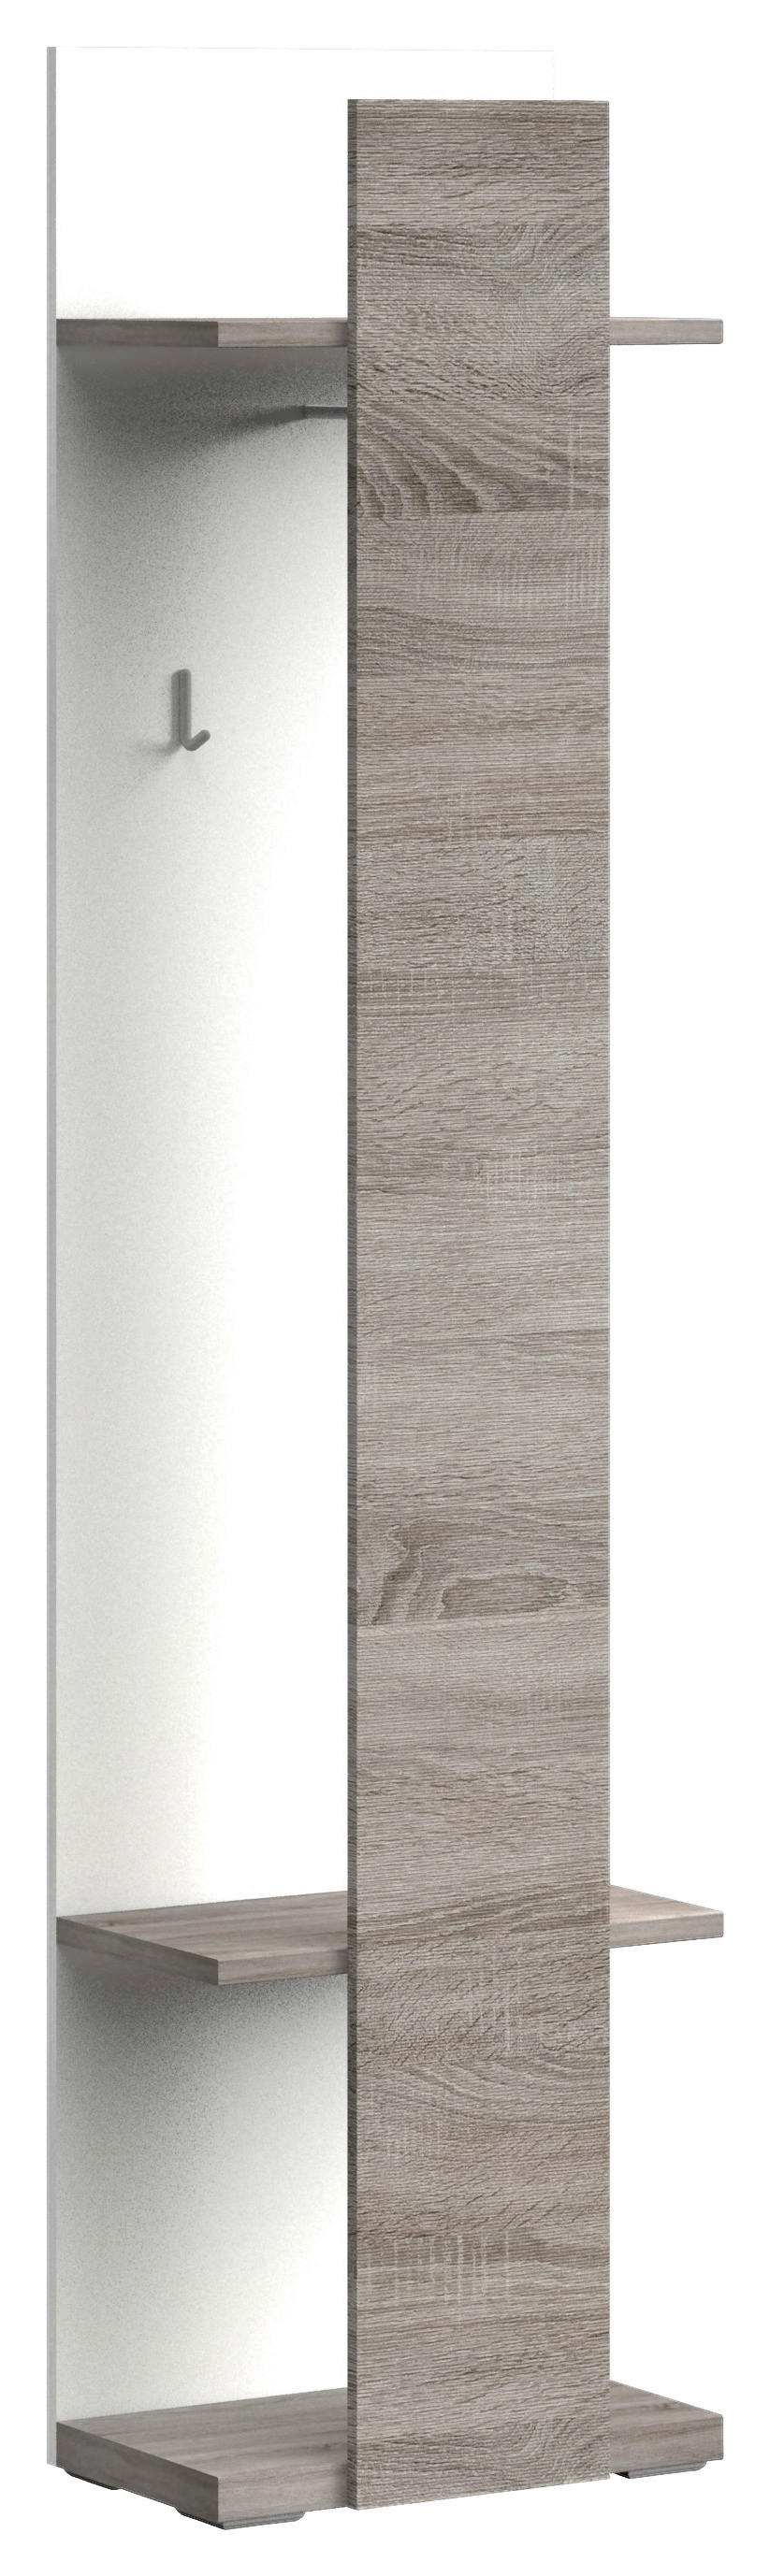 GARDEROBENPANEEL Weiß, Eichefarben  - Eichefarben/Weiß, Design (50/207/30cm) - Xora